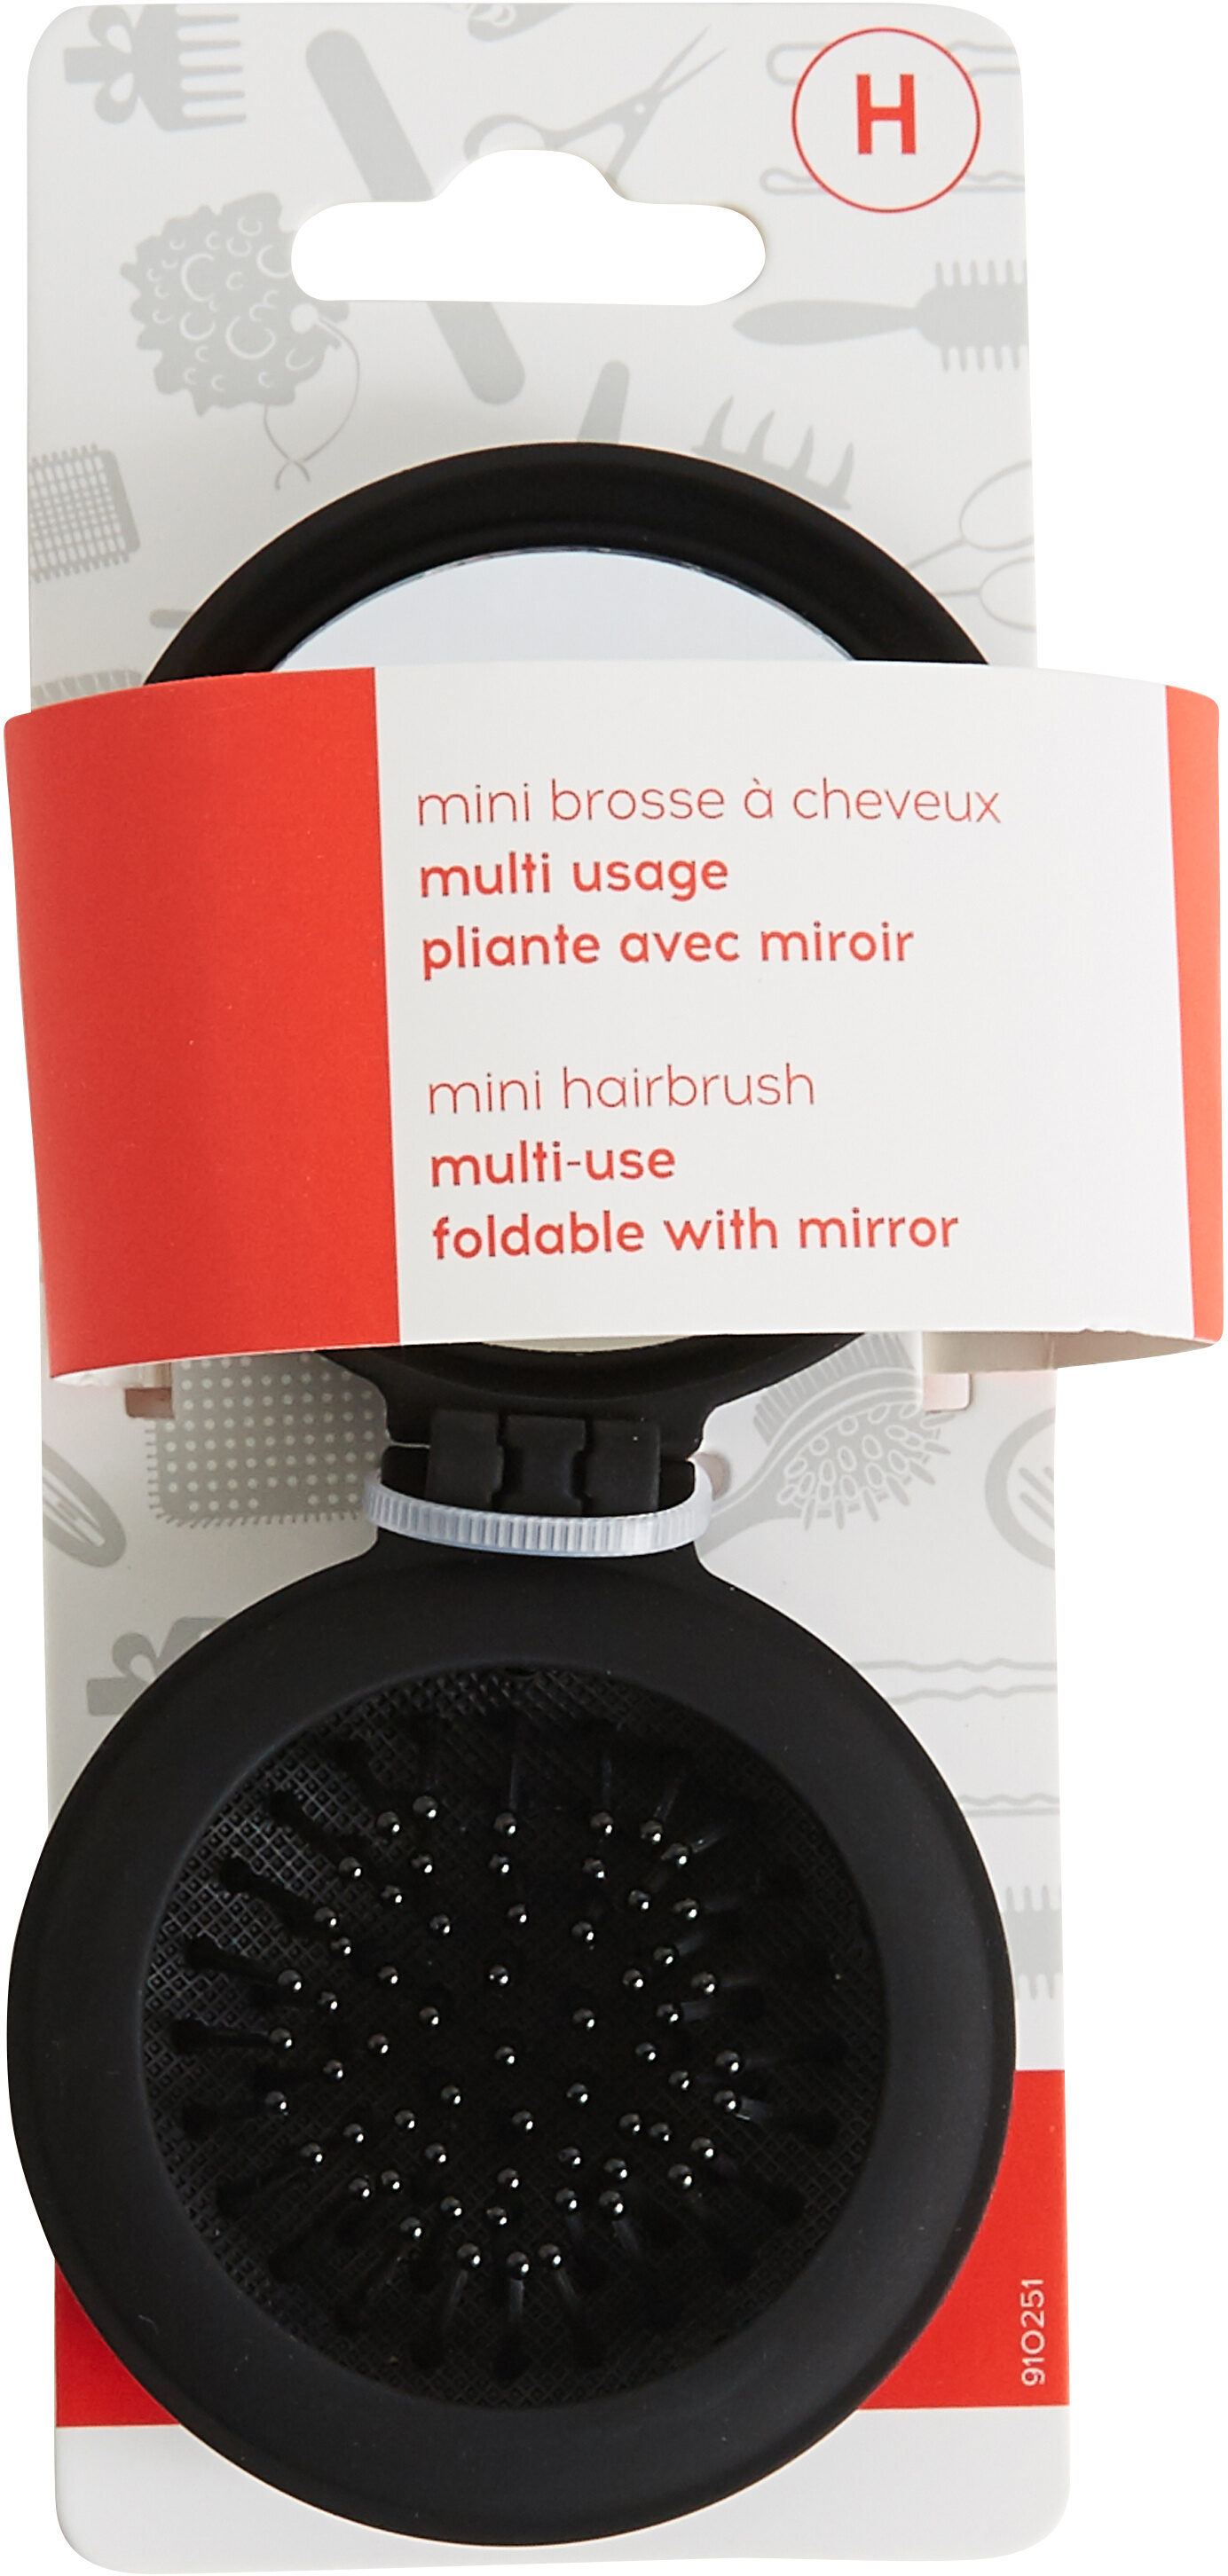 Mini brosse à cheveux - Product - fr